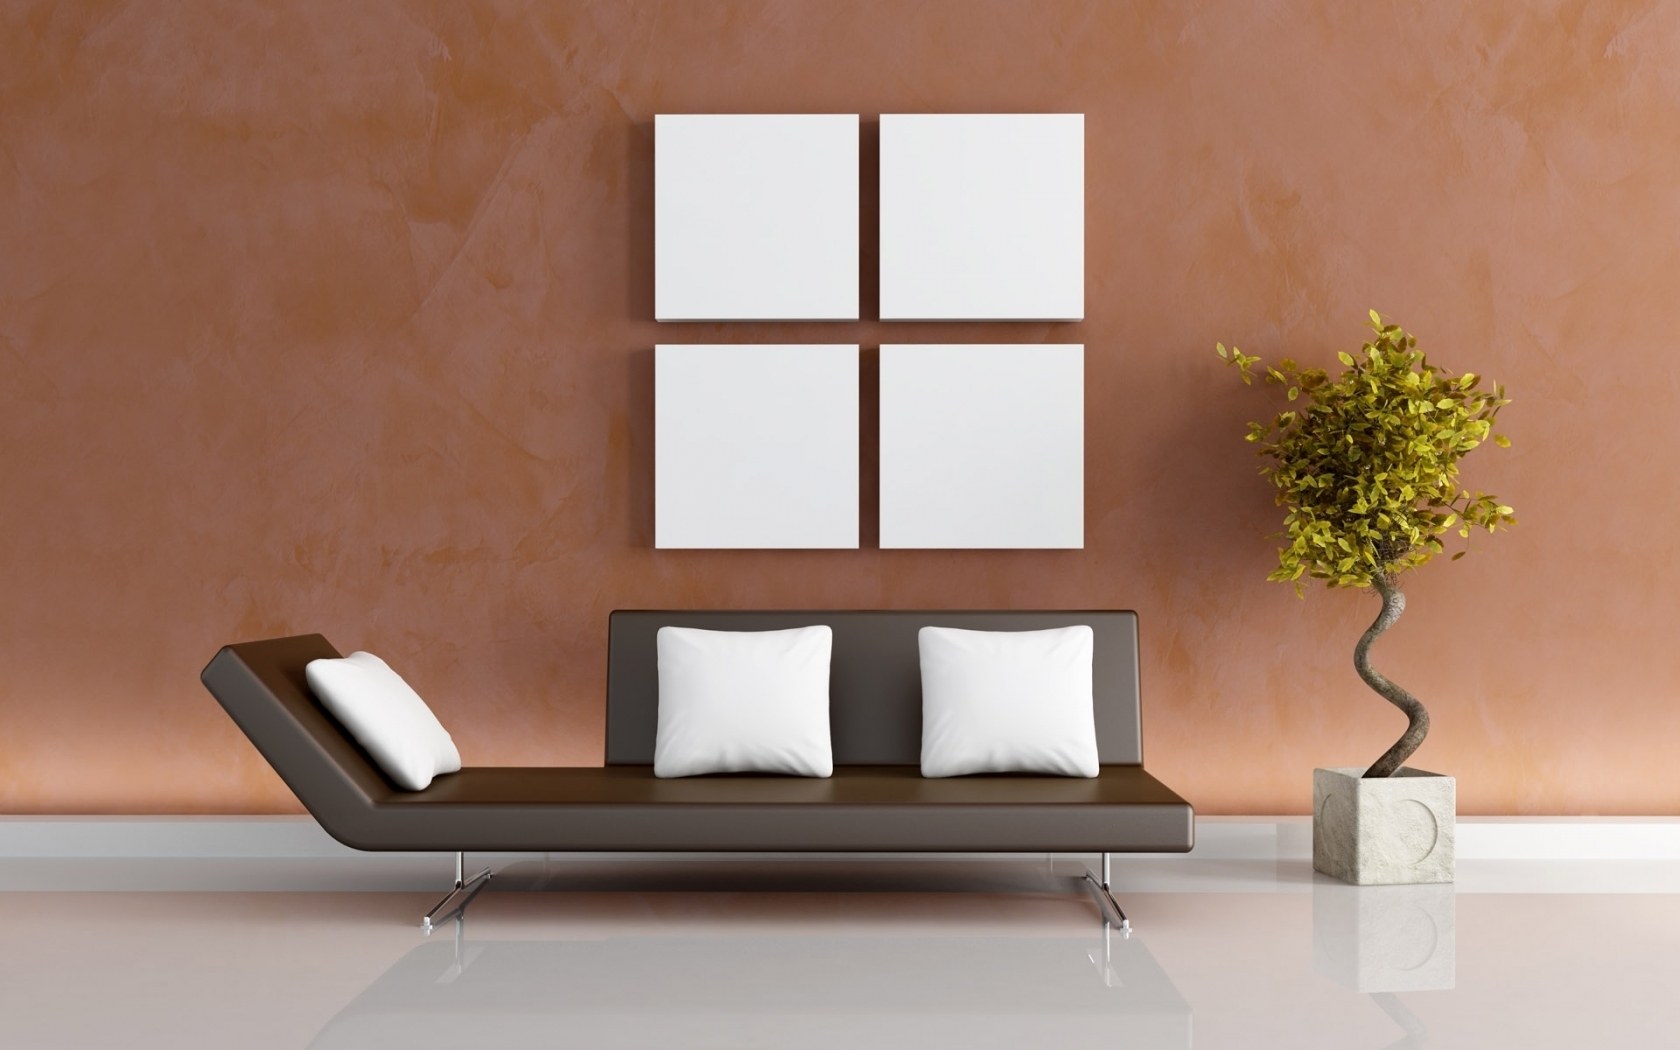 Modern living decor for 1680 x 1050 widescreen resolution